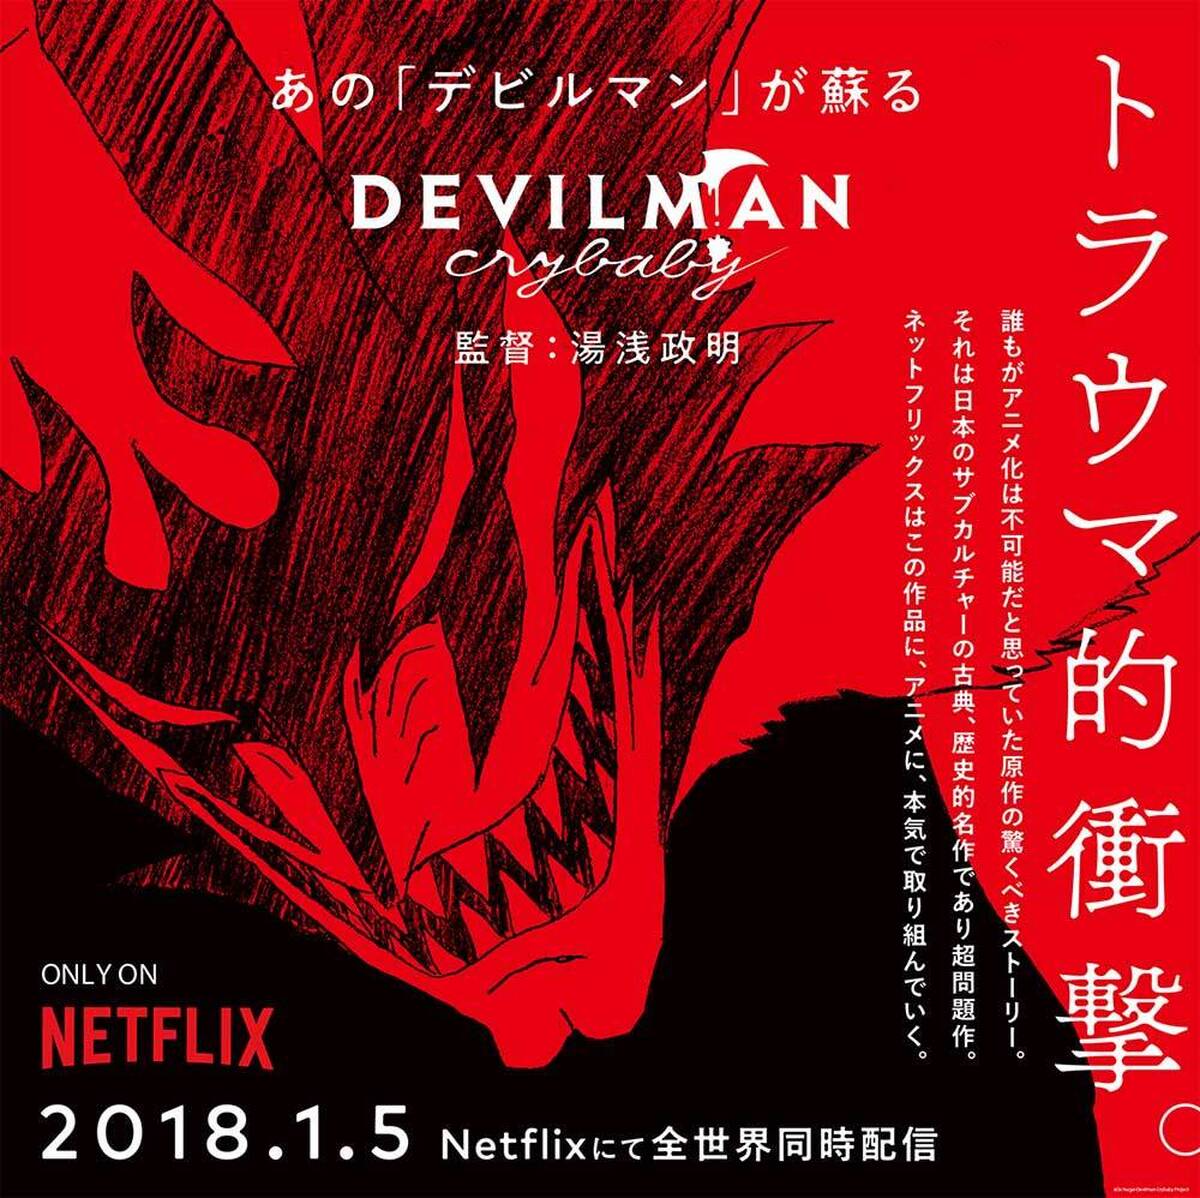 Devilman Crybaby 特別映像公開 アキバ総研